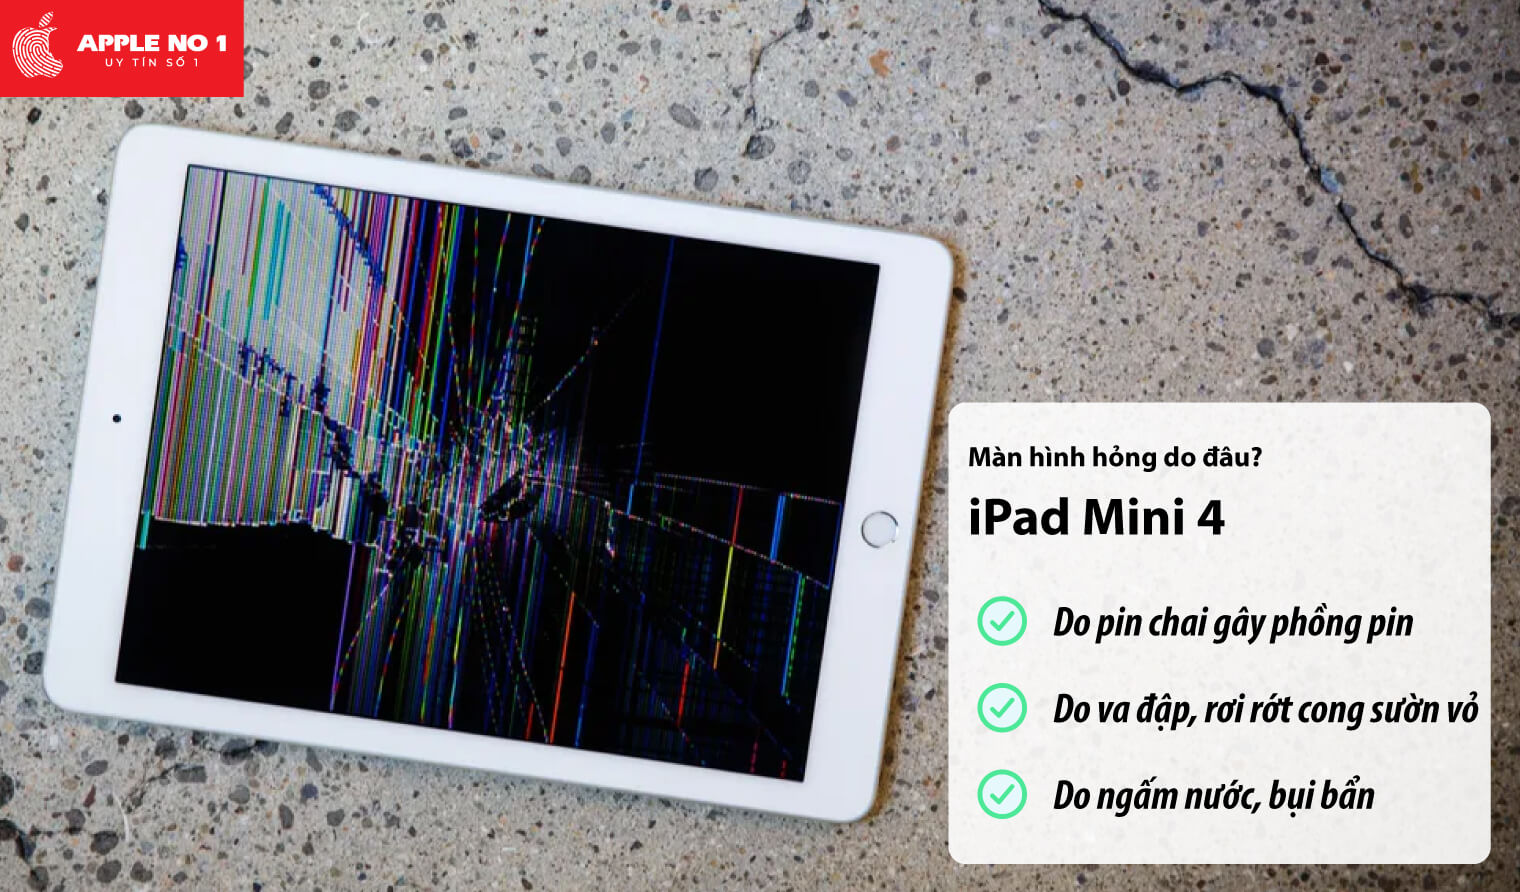 Màn hình iPad mini 4 bị hỏng do đâu?